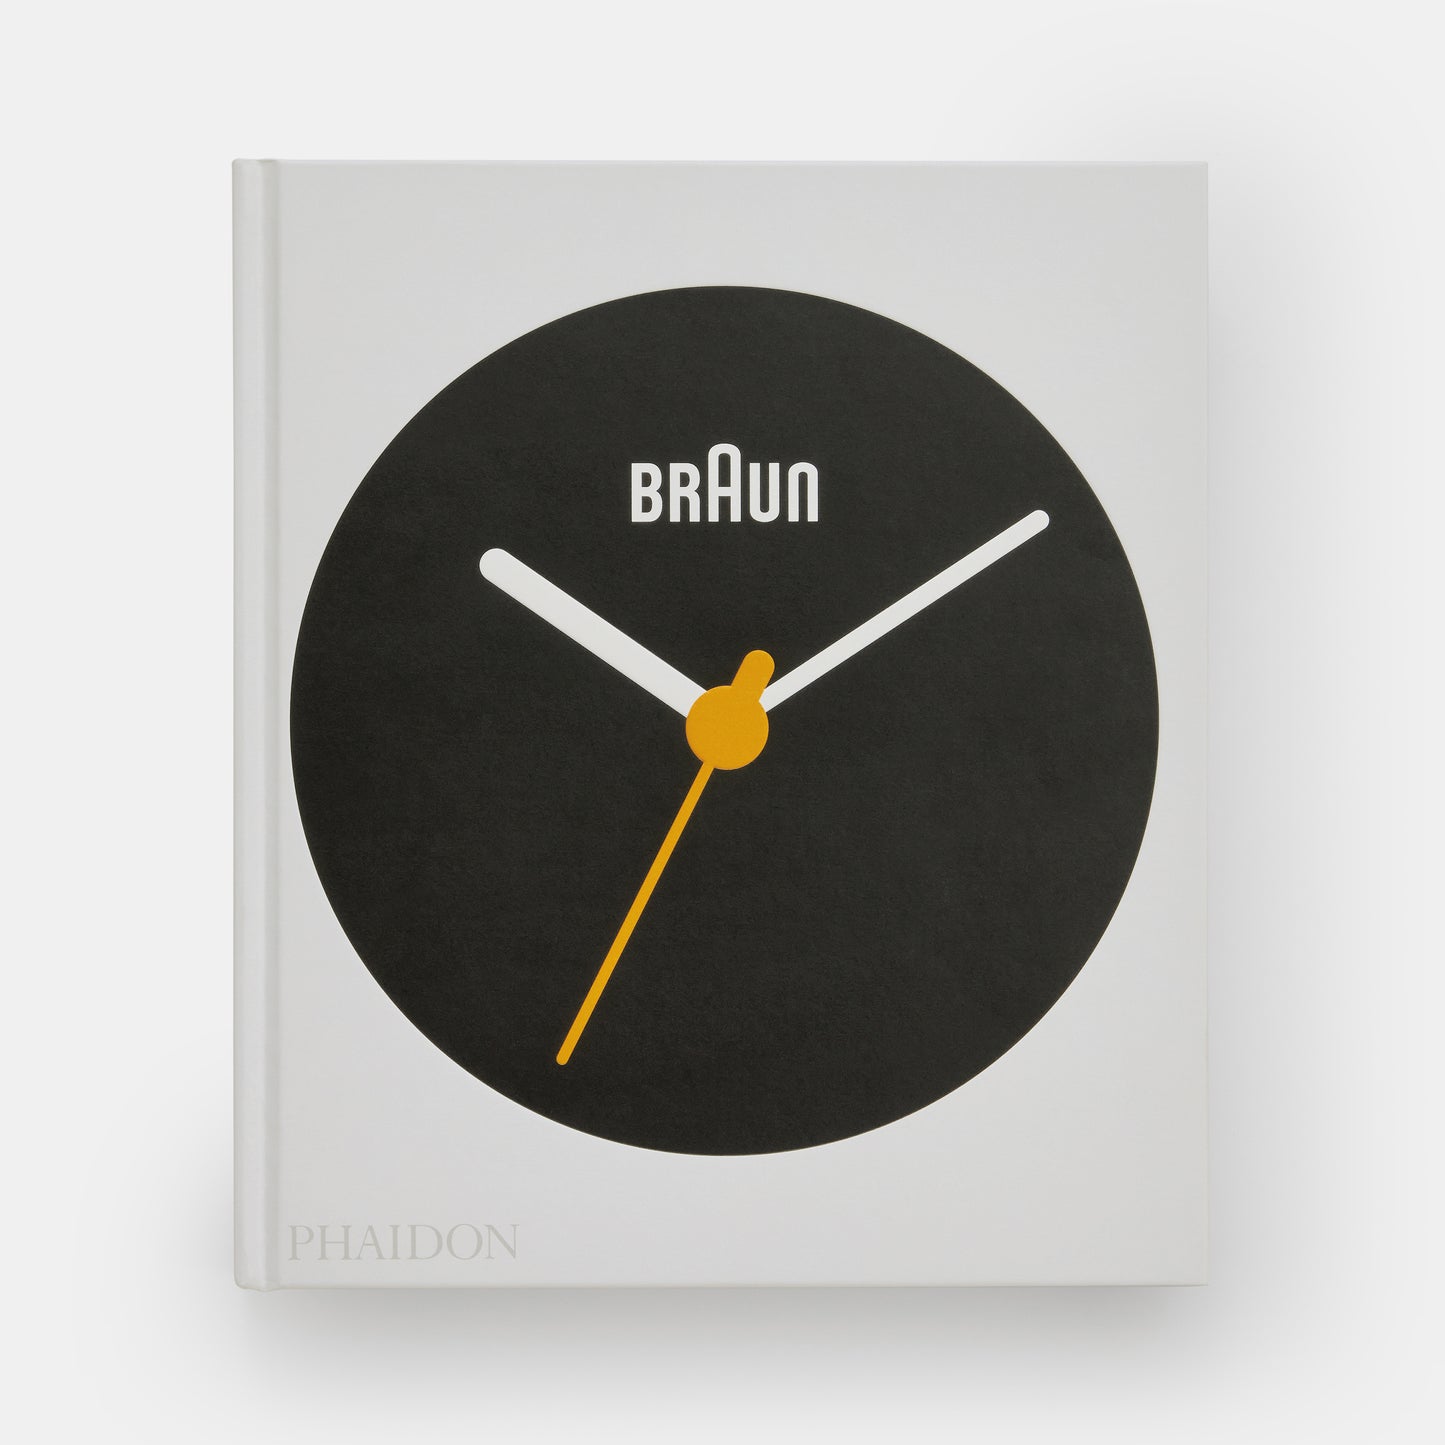 Braun: Designd to Keep